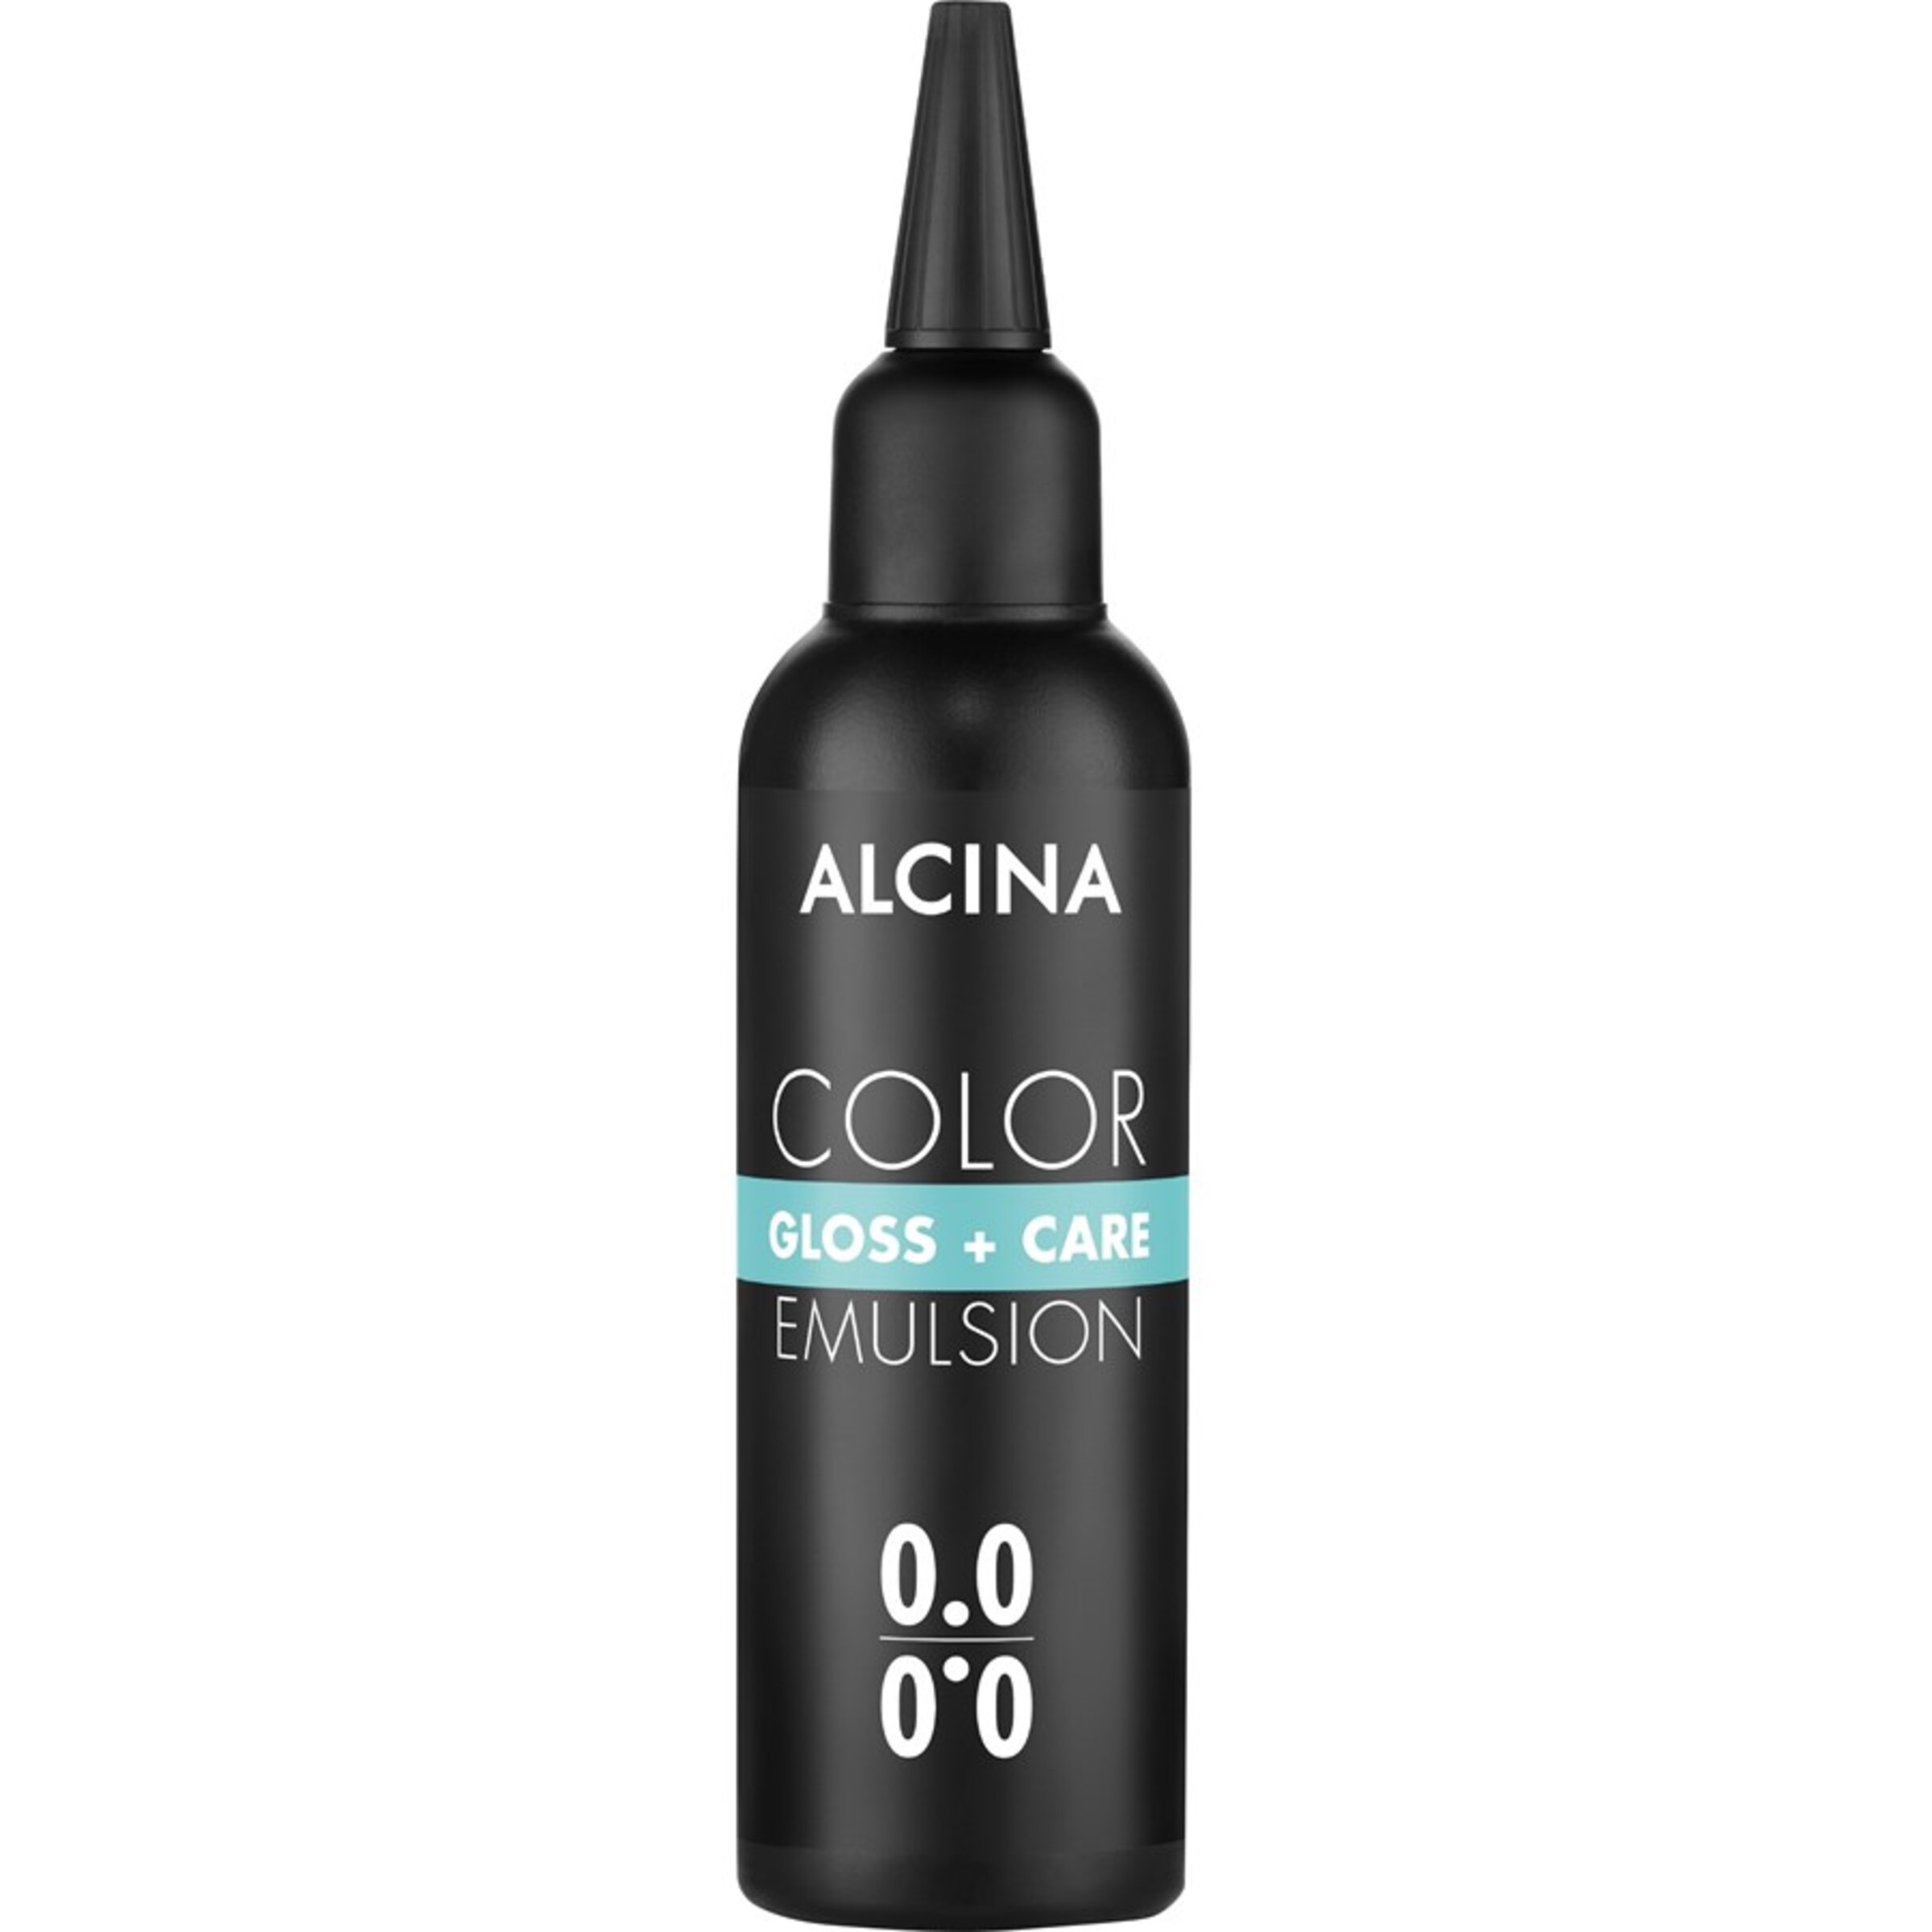 Alcina Haartönung Gloss + Care Color Emulsion in Weiß 